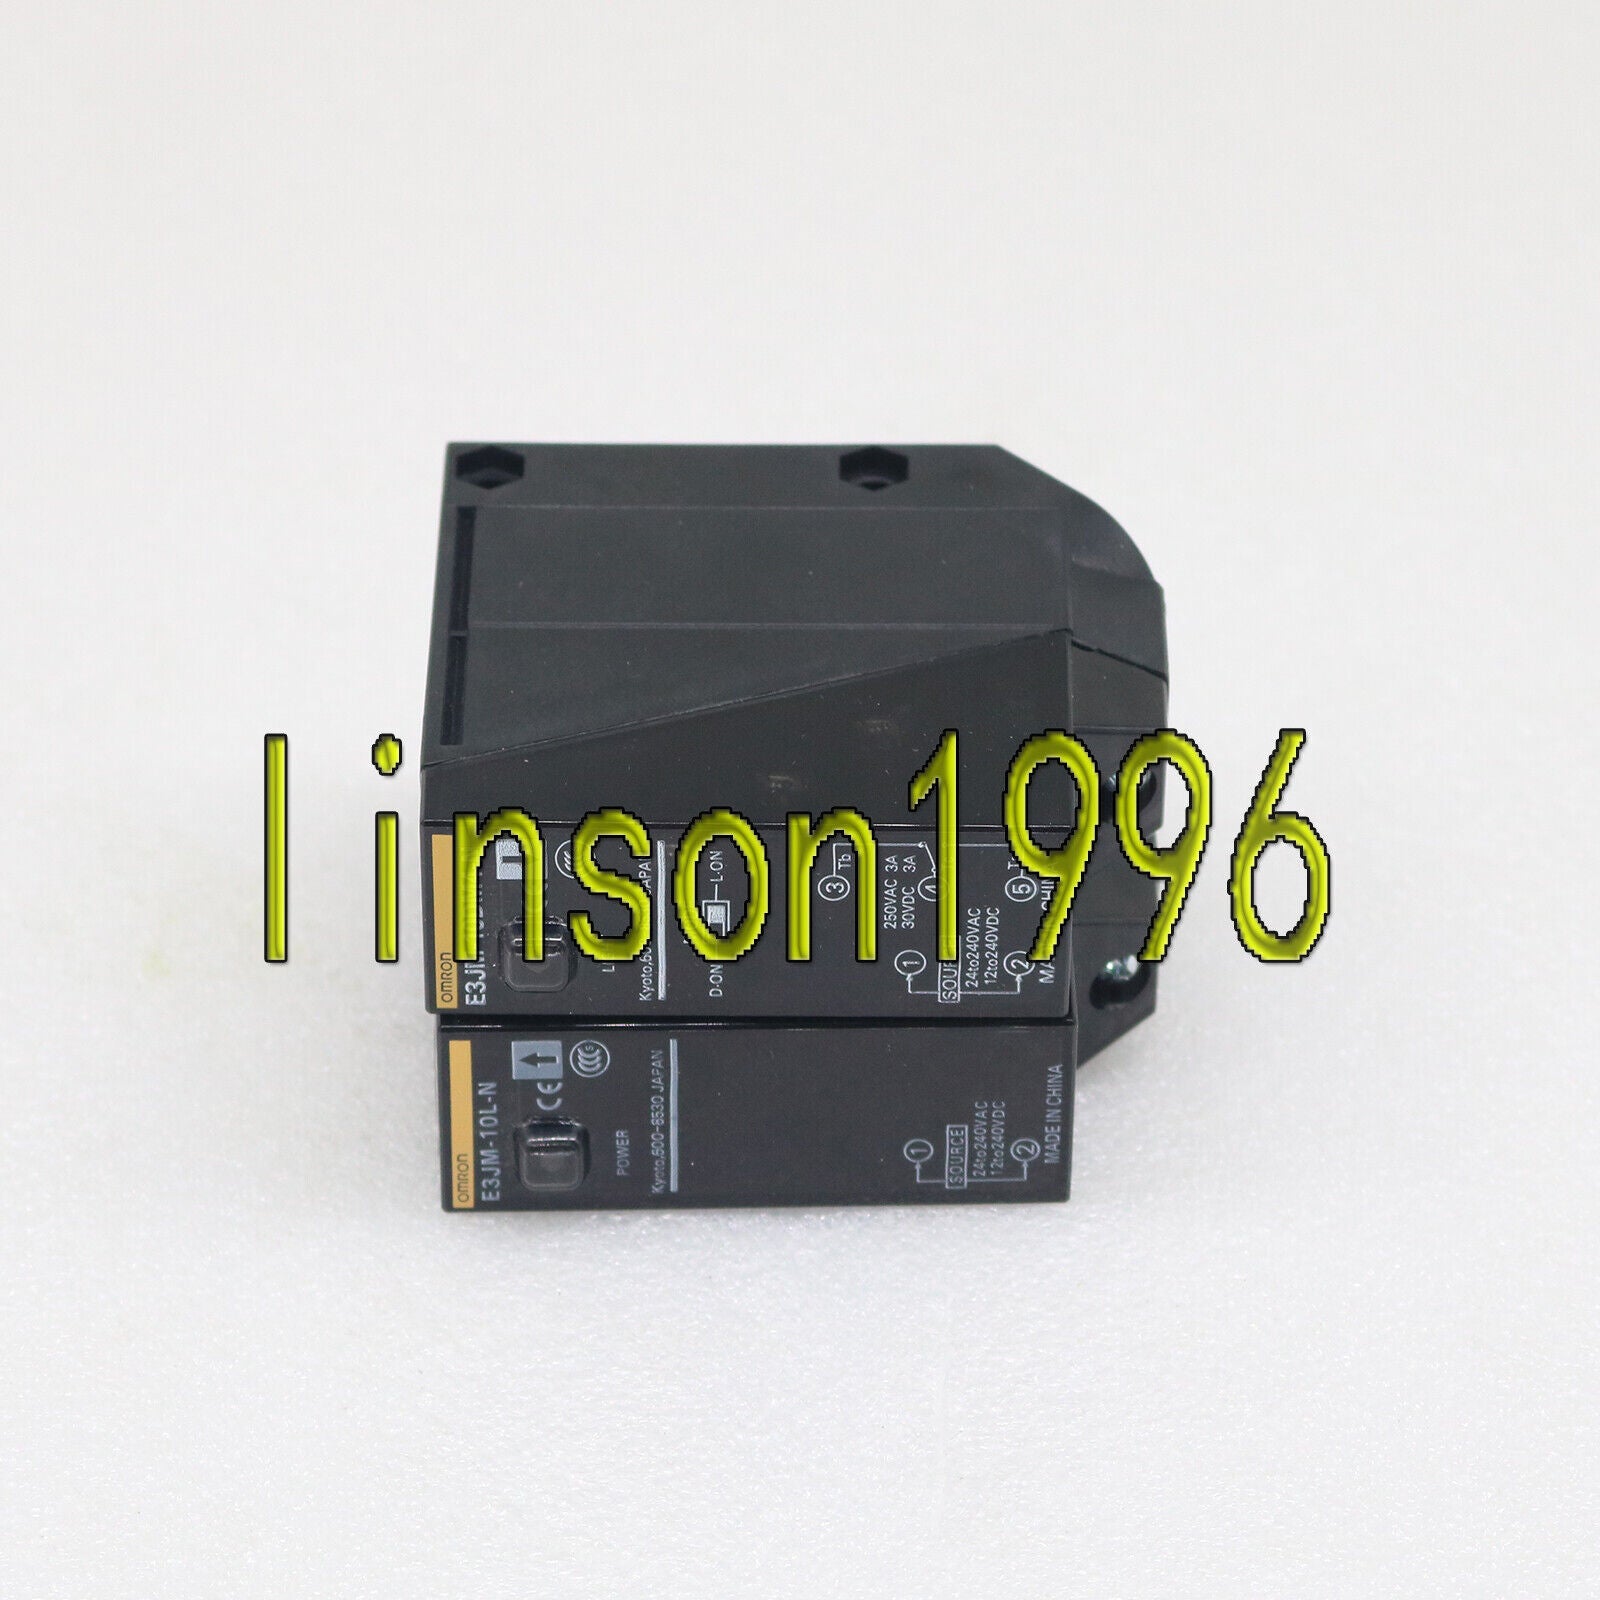 new  Omron photoelectric sensor E3JM-10M4-N E3JM10M4N One year